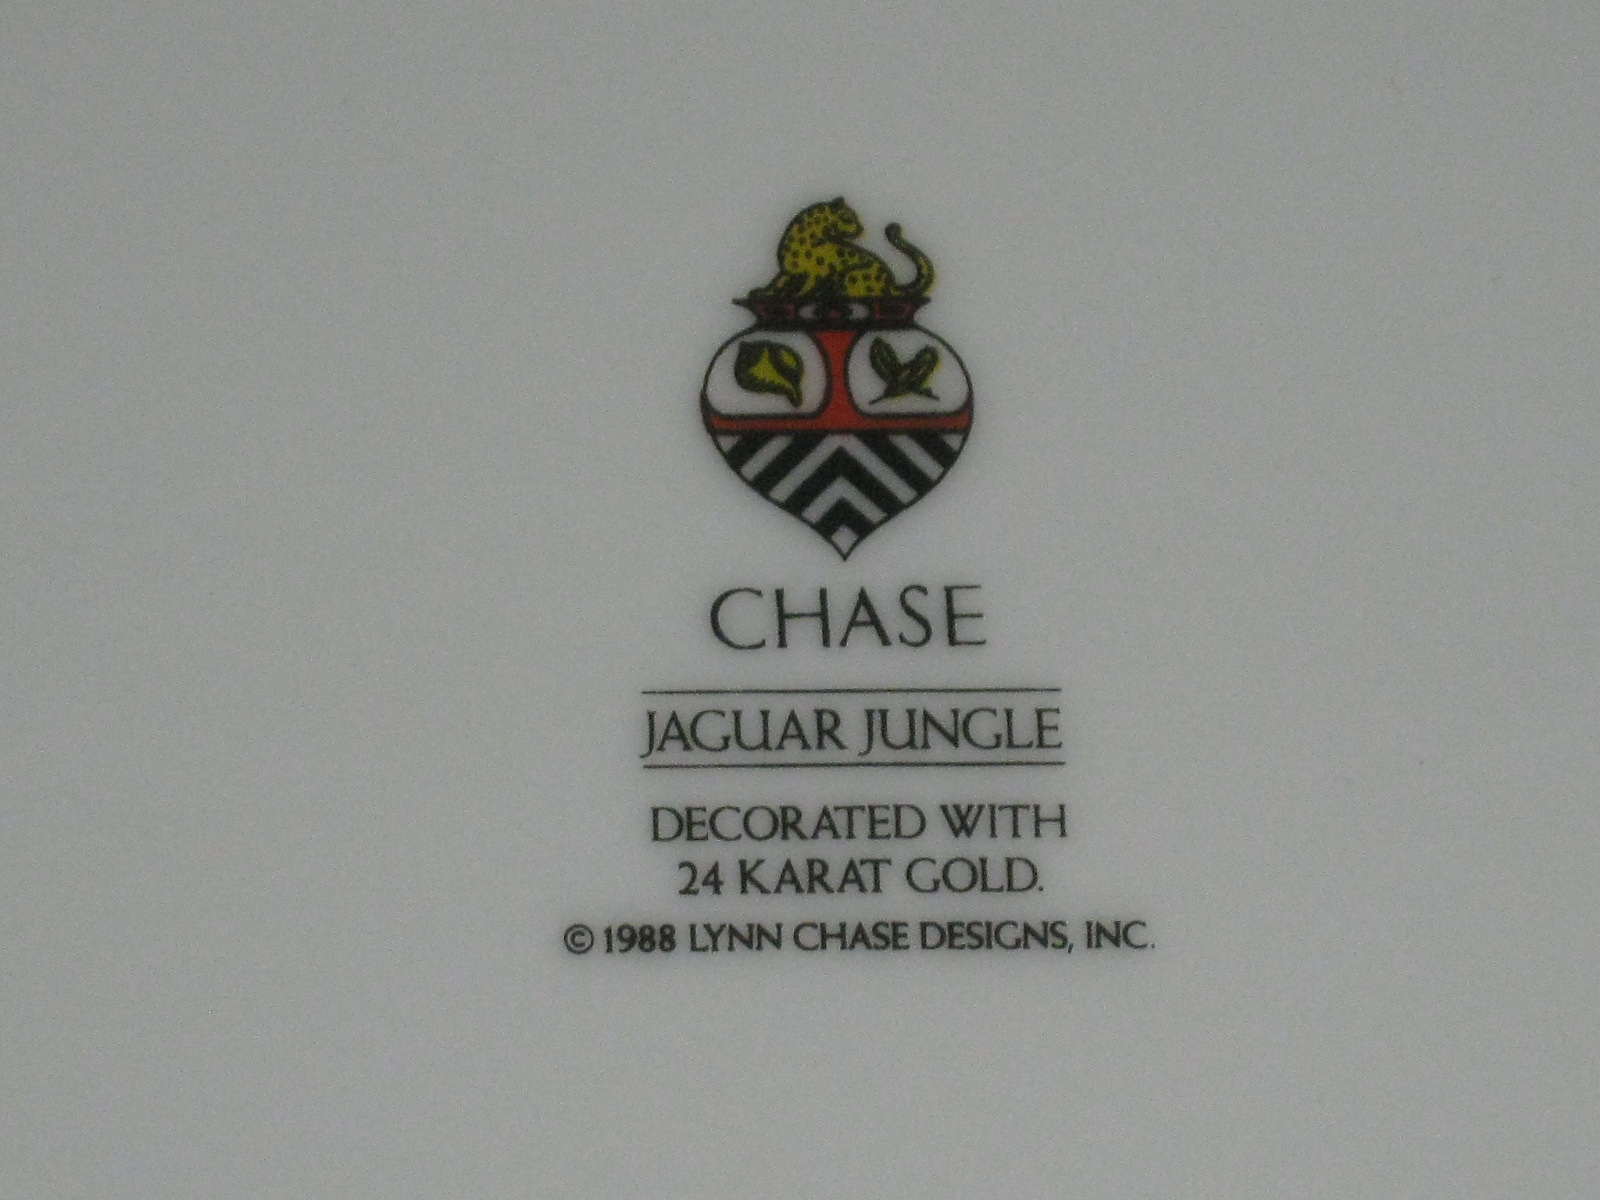 Vtg Lynn Chase Jaguar Jungle 12" Inch Serving Bowl Decorated With 24 Karat Gold 9